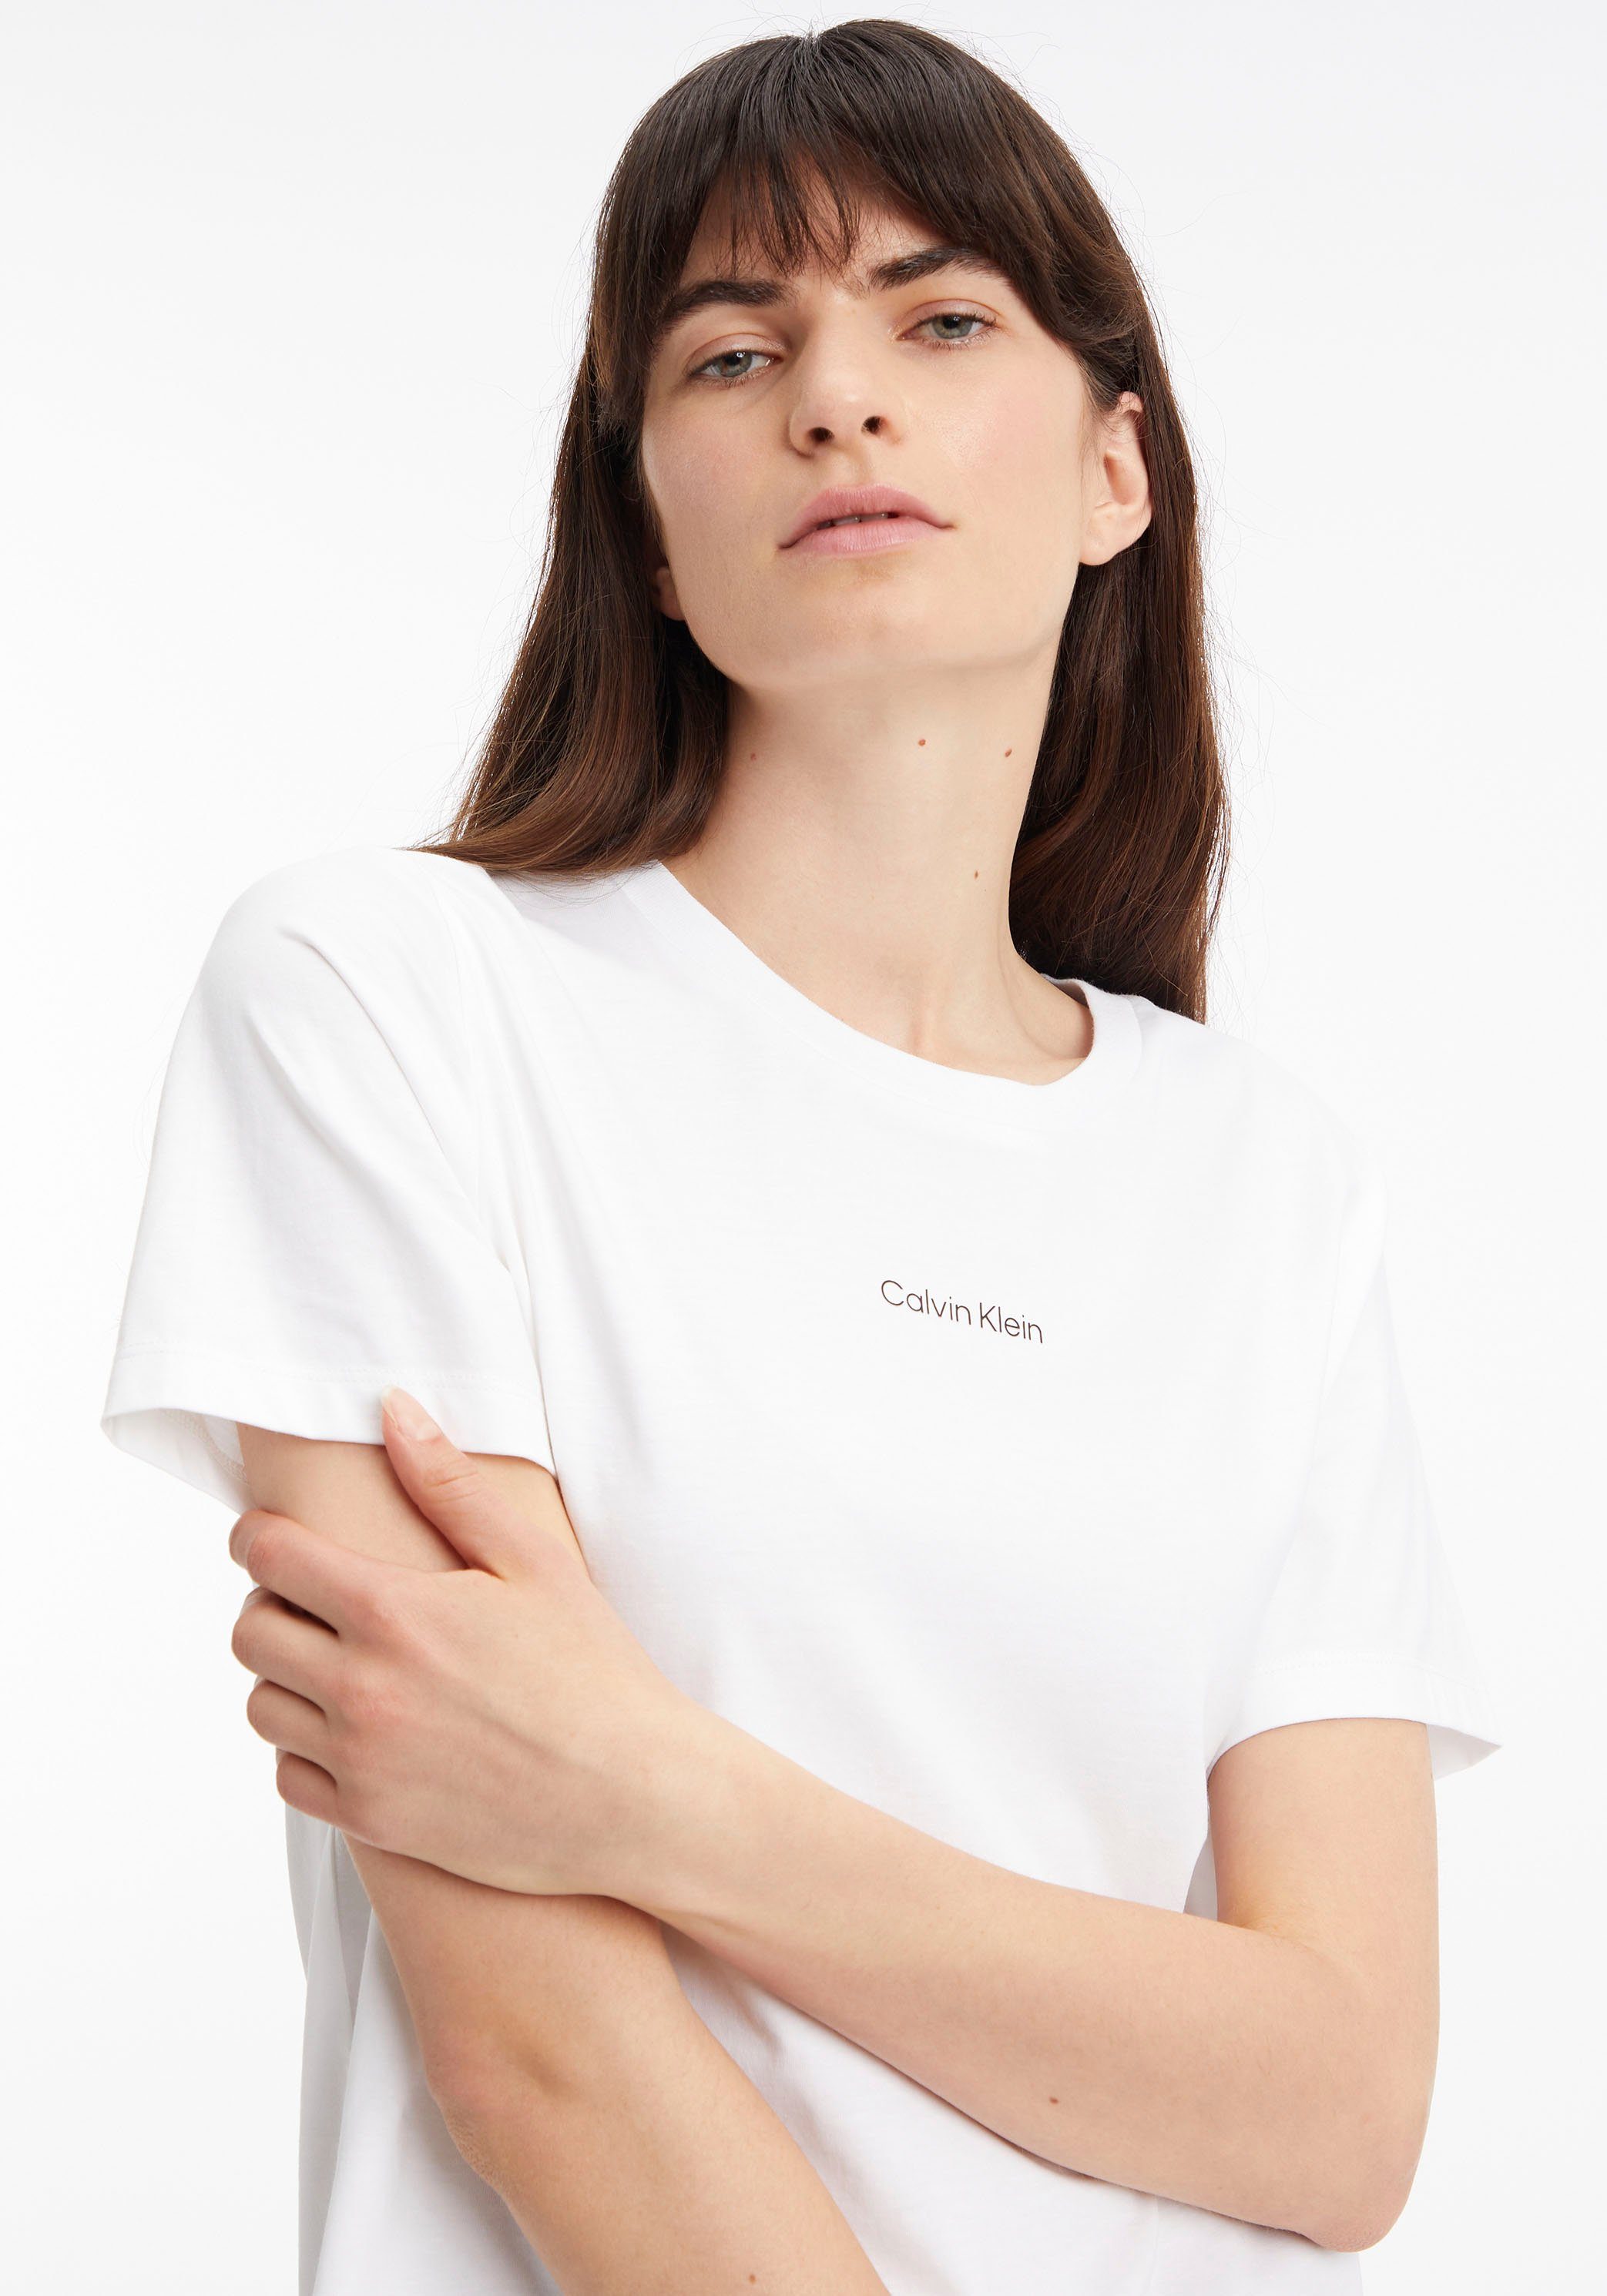 MICRO T-SHIRT LOGO Klein aus T-Shirt Baumwolle Bright-White reiner Calvin